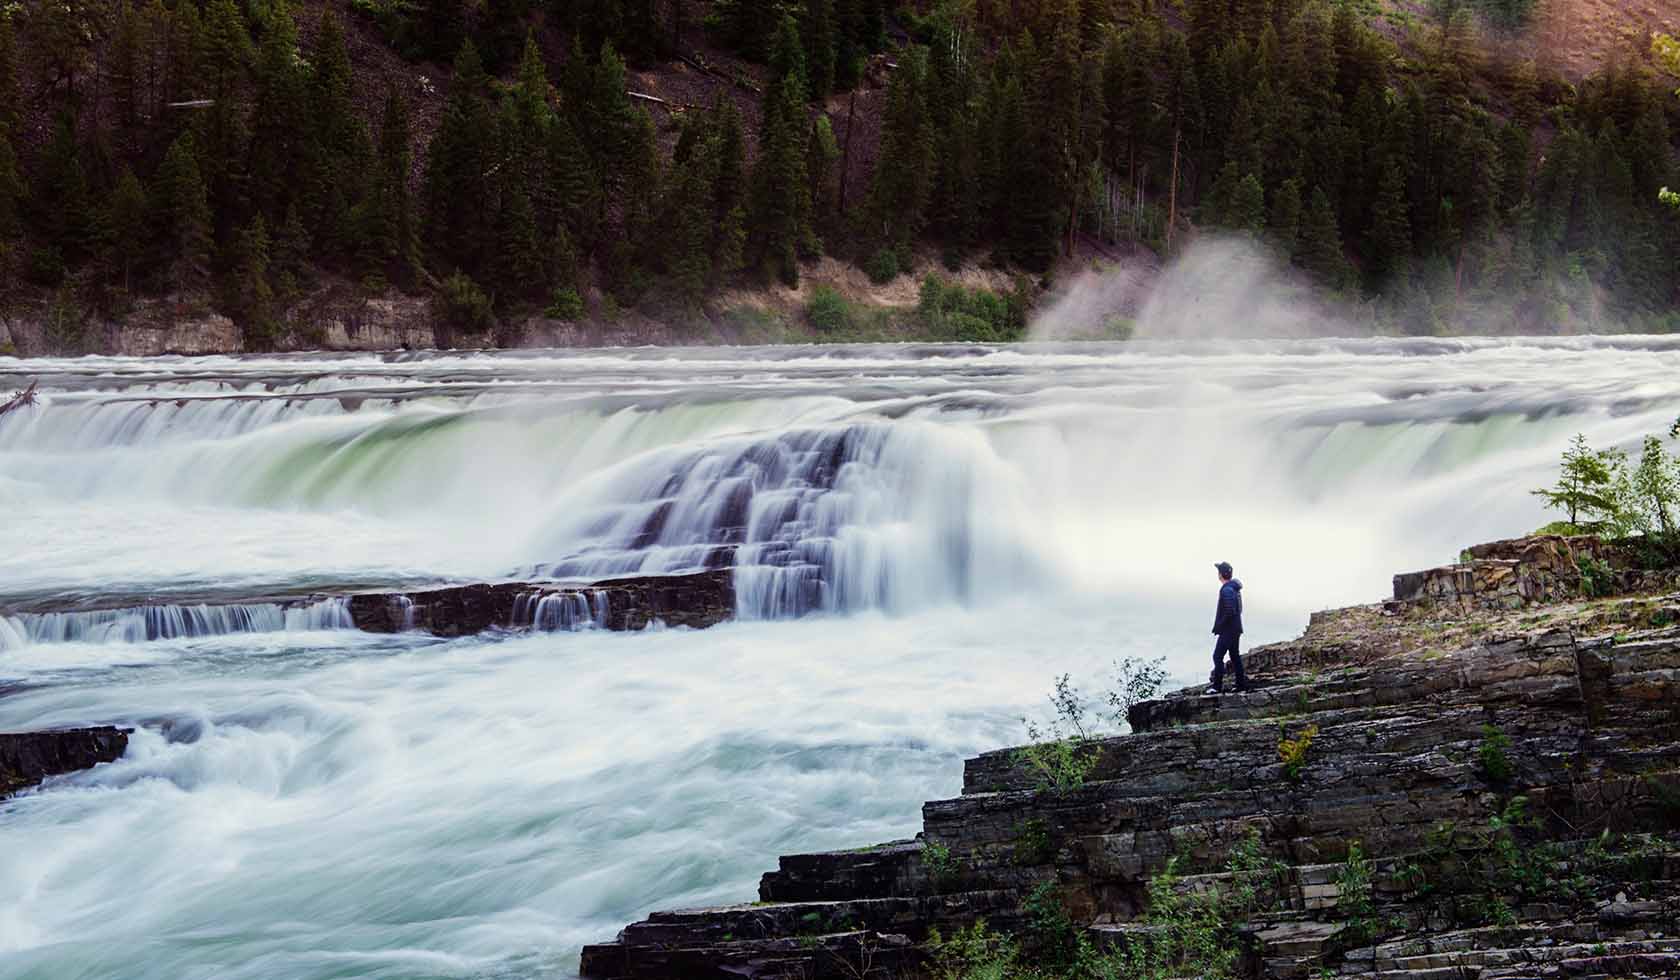 Kootenai Falls. Photo courtesy of Montana Fish Wildlife and Parks.